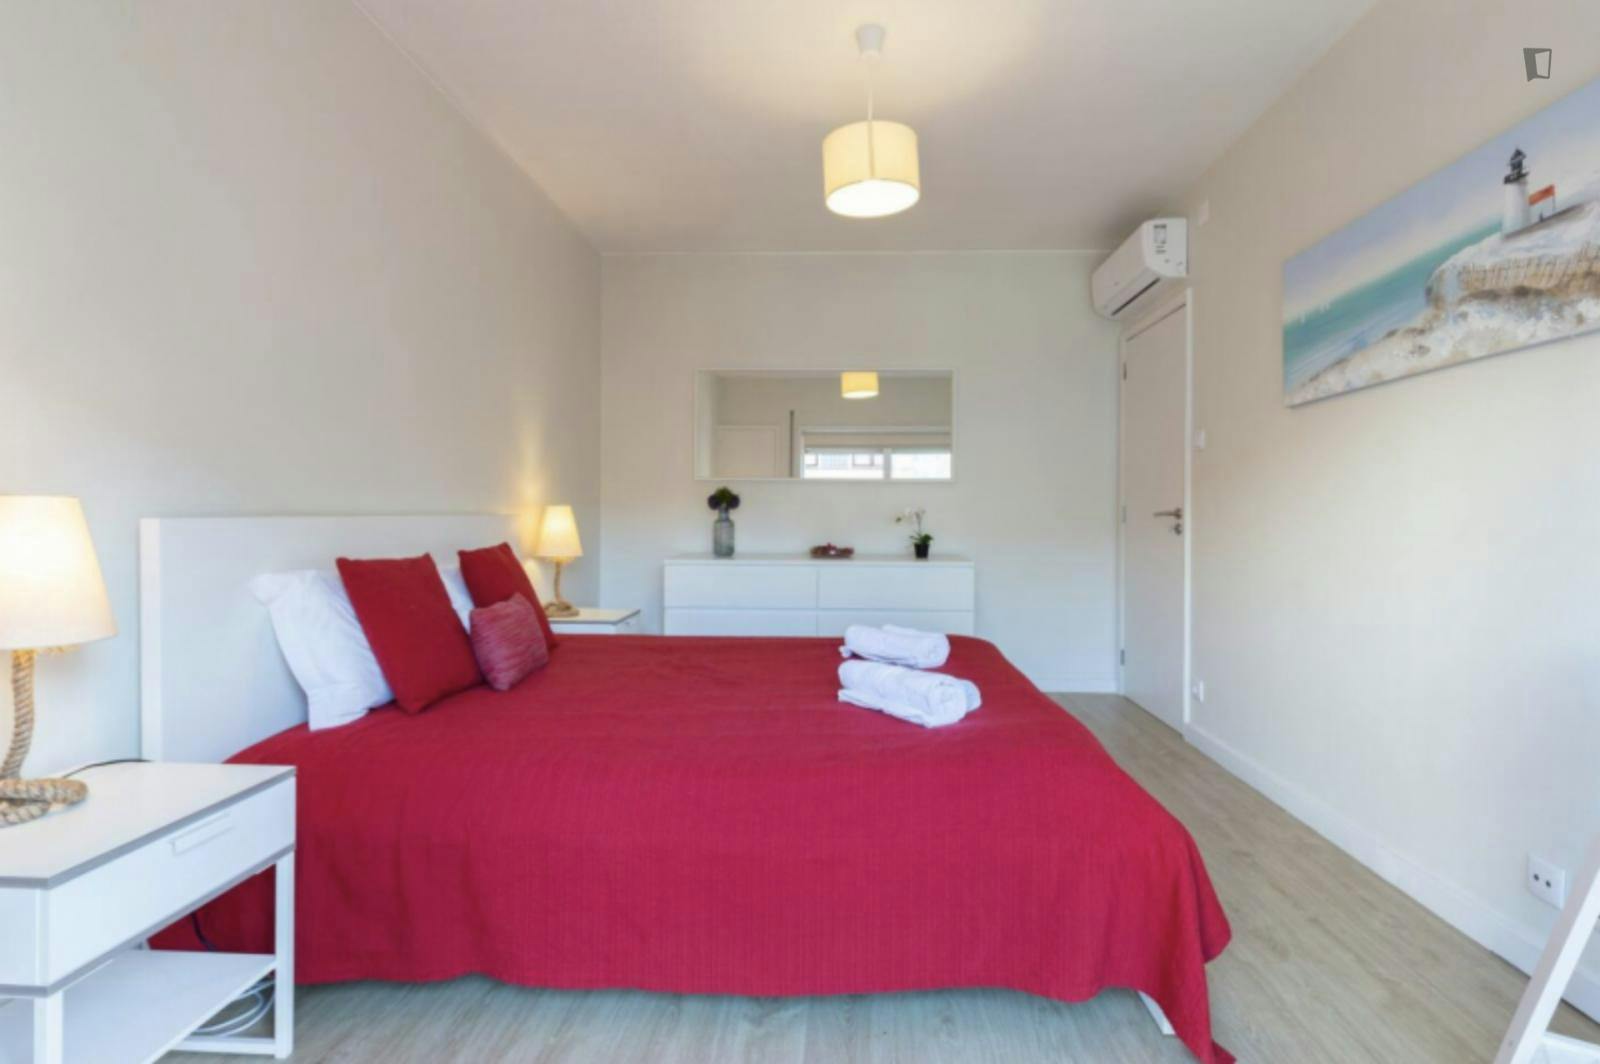 Exquisite 3-bedroom flat in Matosinhos